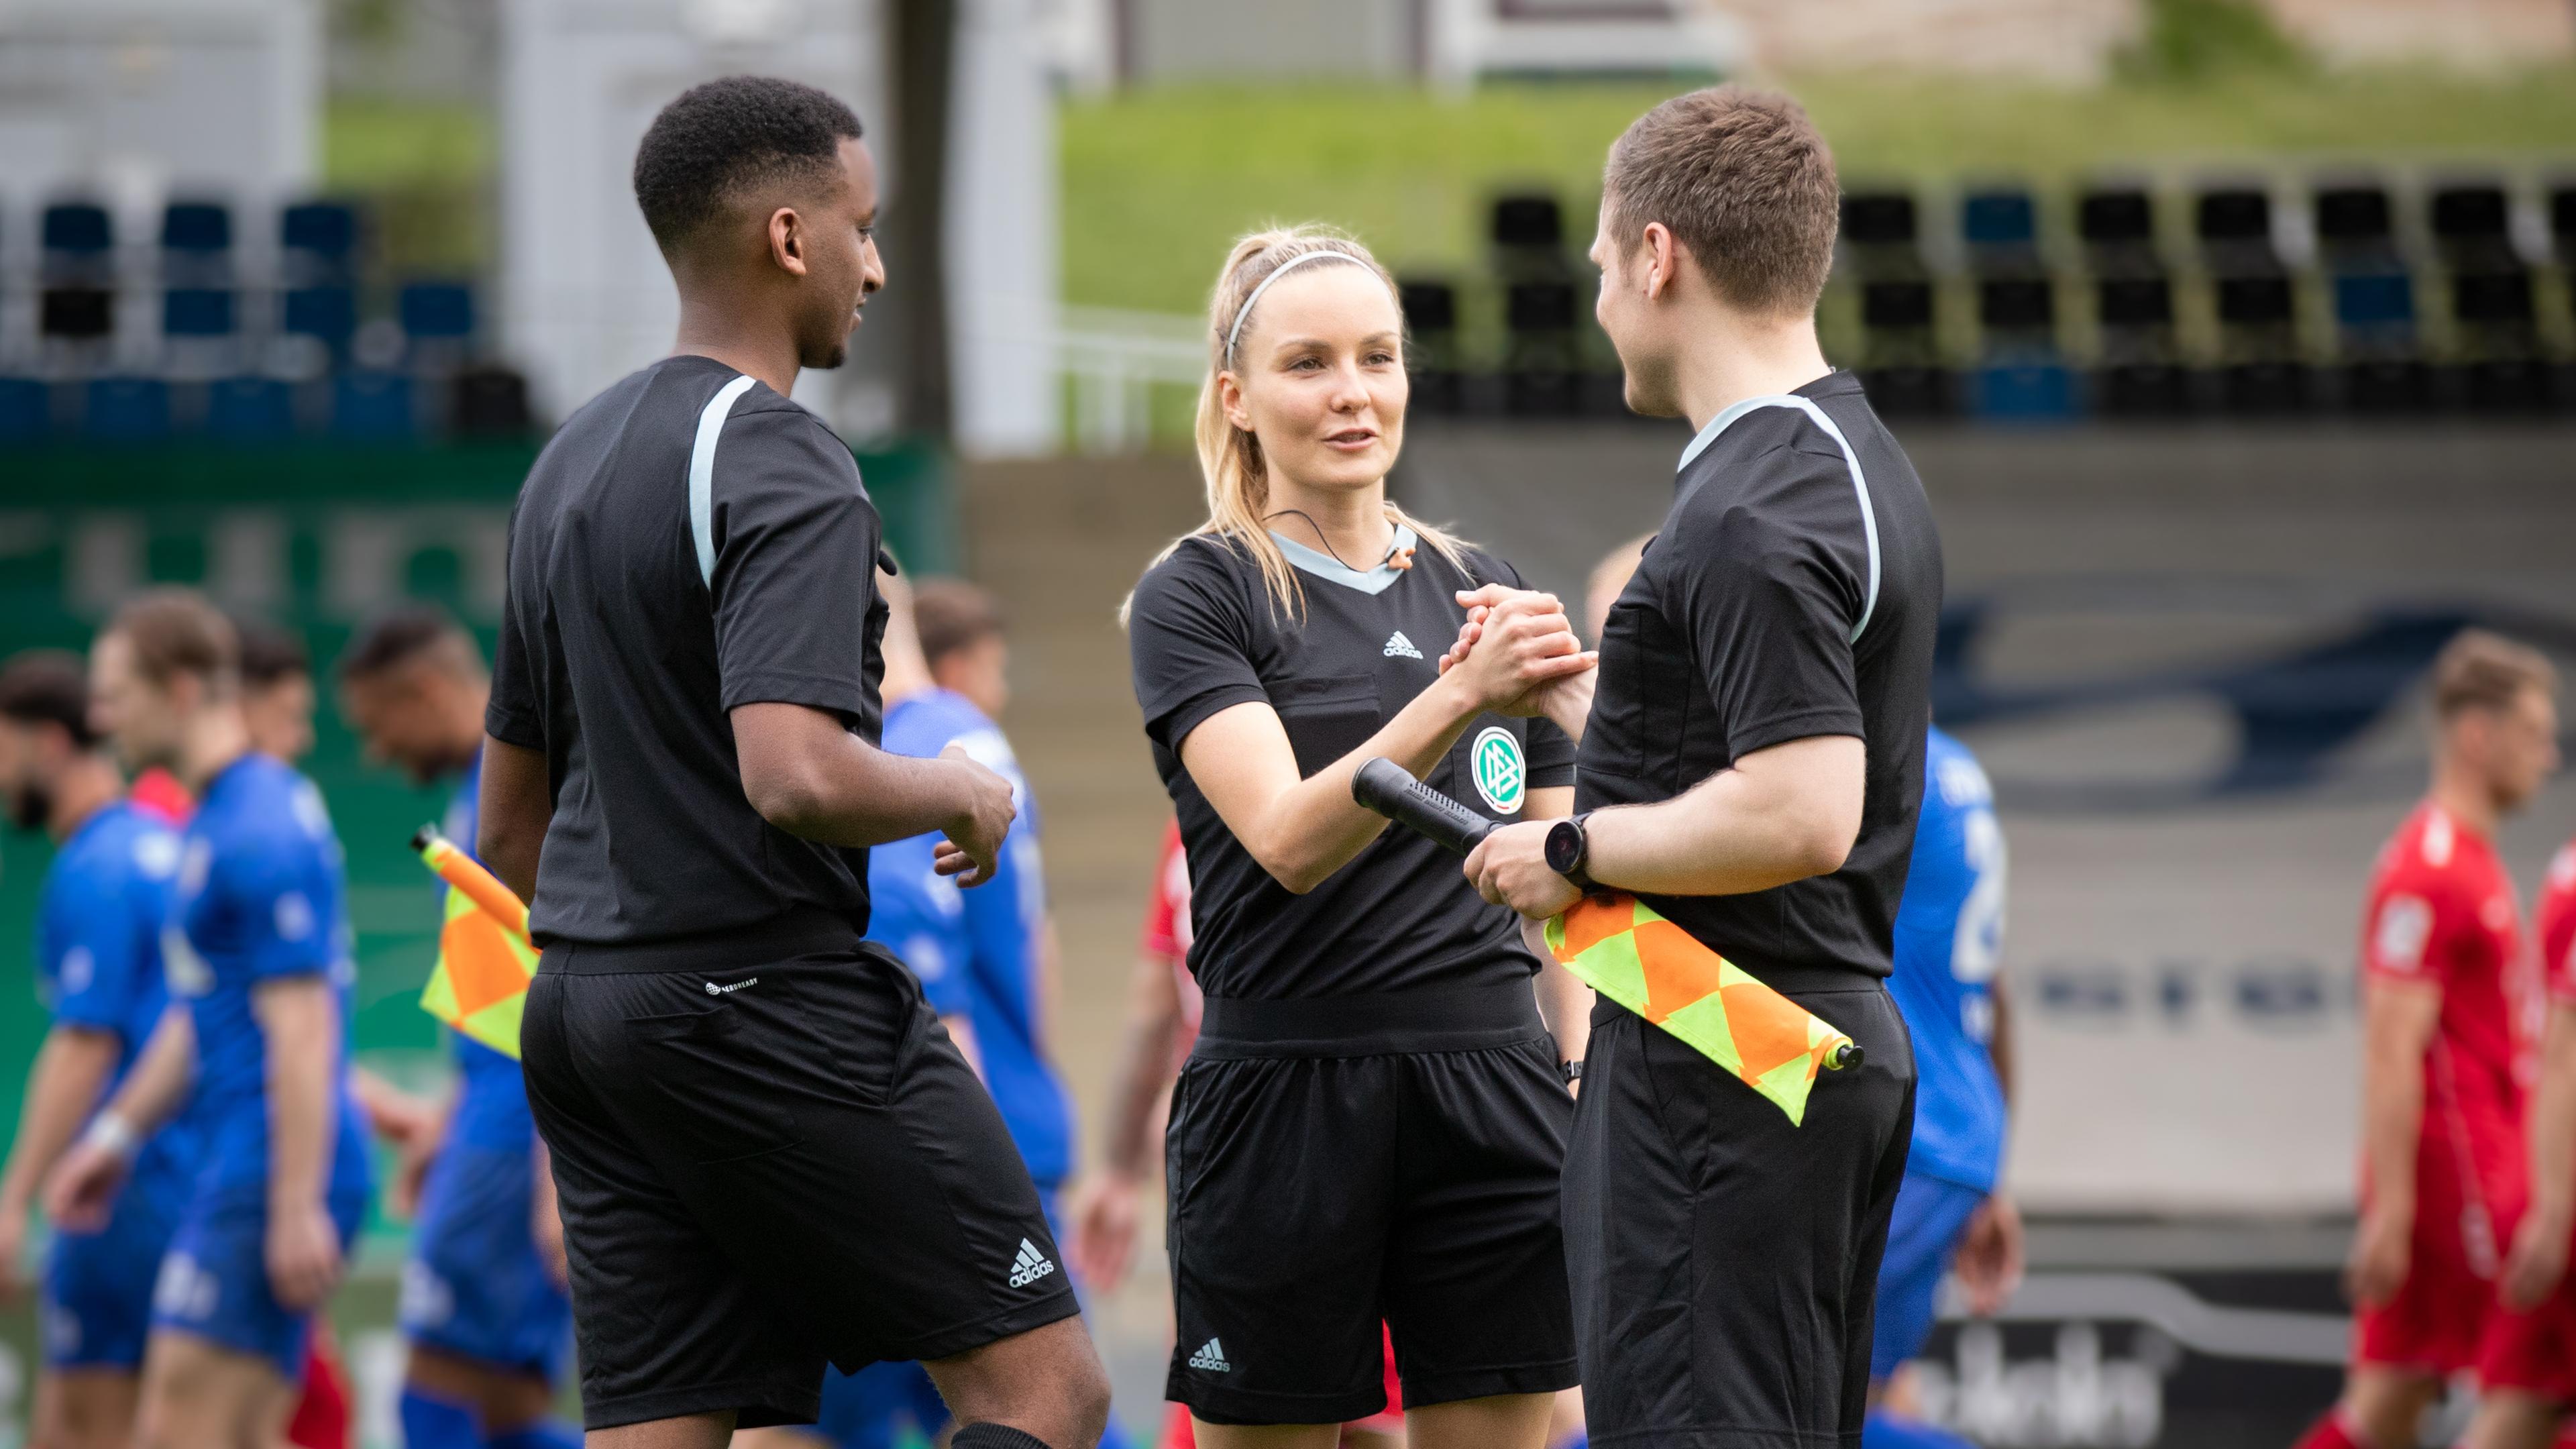 Fabienne ist im Stadion in Schiedsrichteroutfit im Gespräch mit zwei männlichen Kollegen. Im Hintergrund laufen Fußballspieler in blauer oder roter Trainingskleidung.